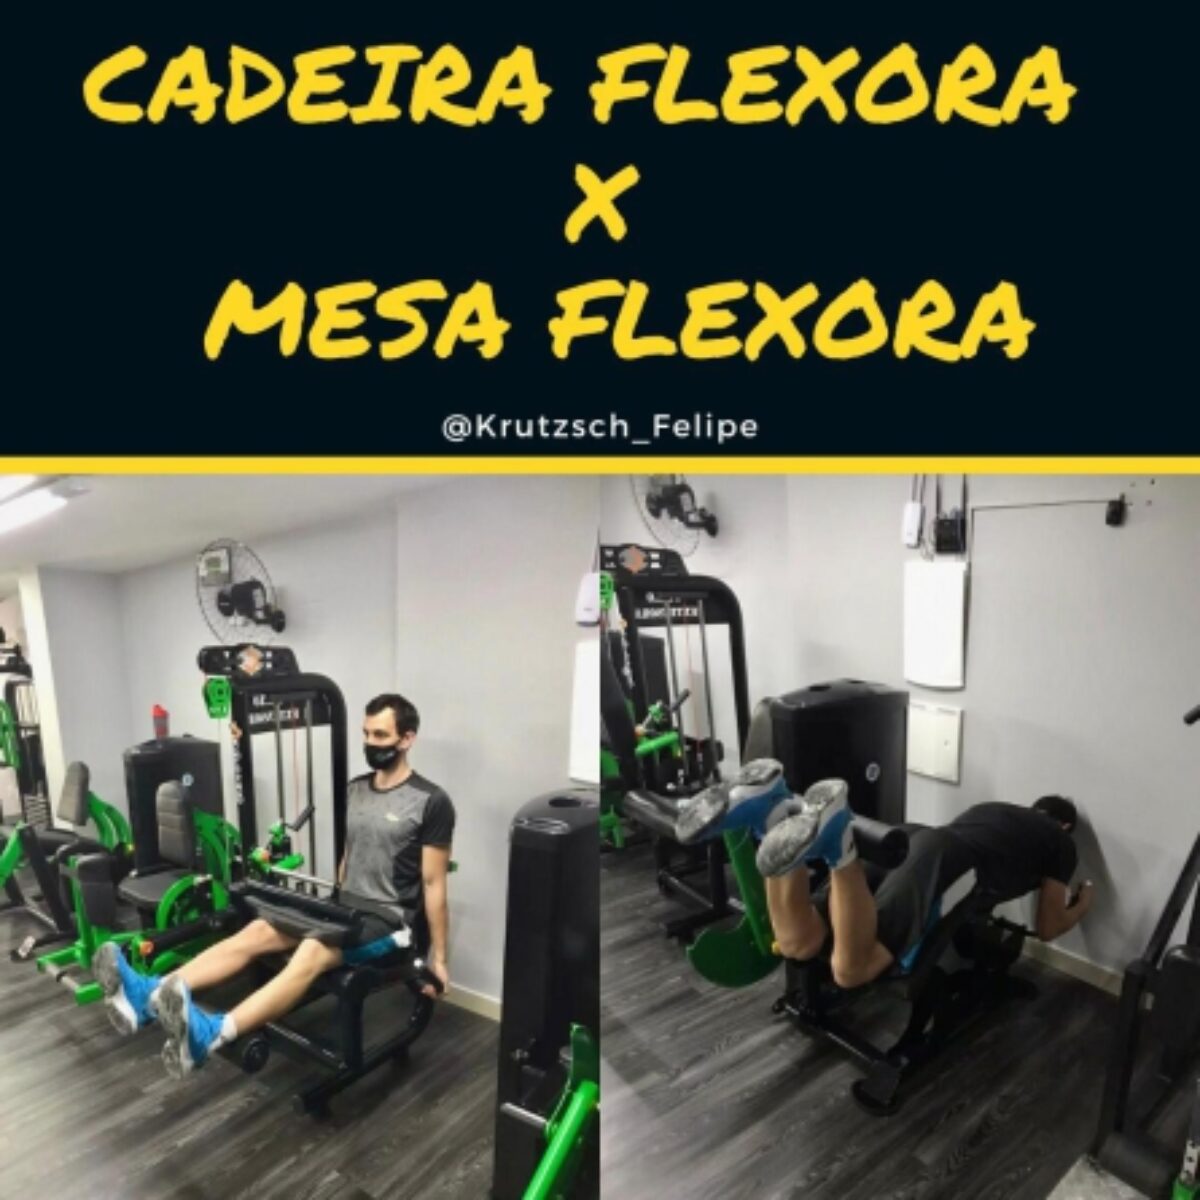 https://revistacamboriu.com.br/wp-content/uploads/2020/11/Cadeira-flexora-e-mesa-flexora-1200x1200.jpg